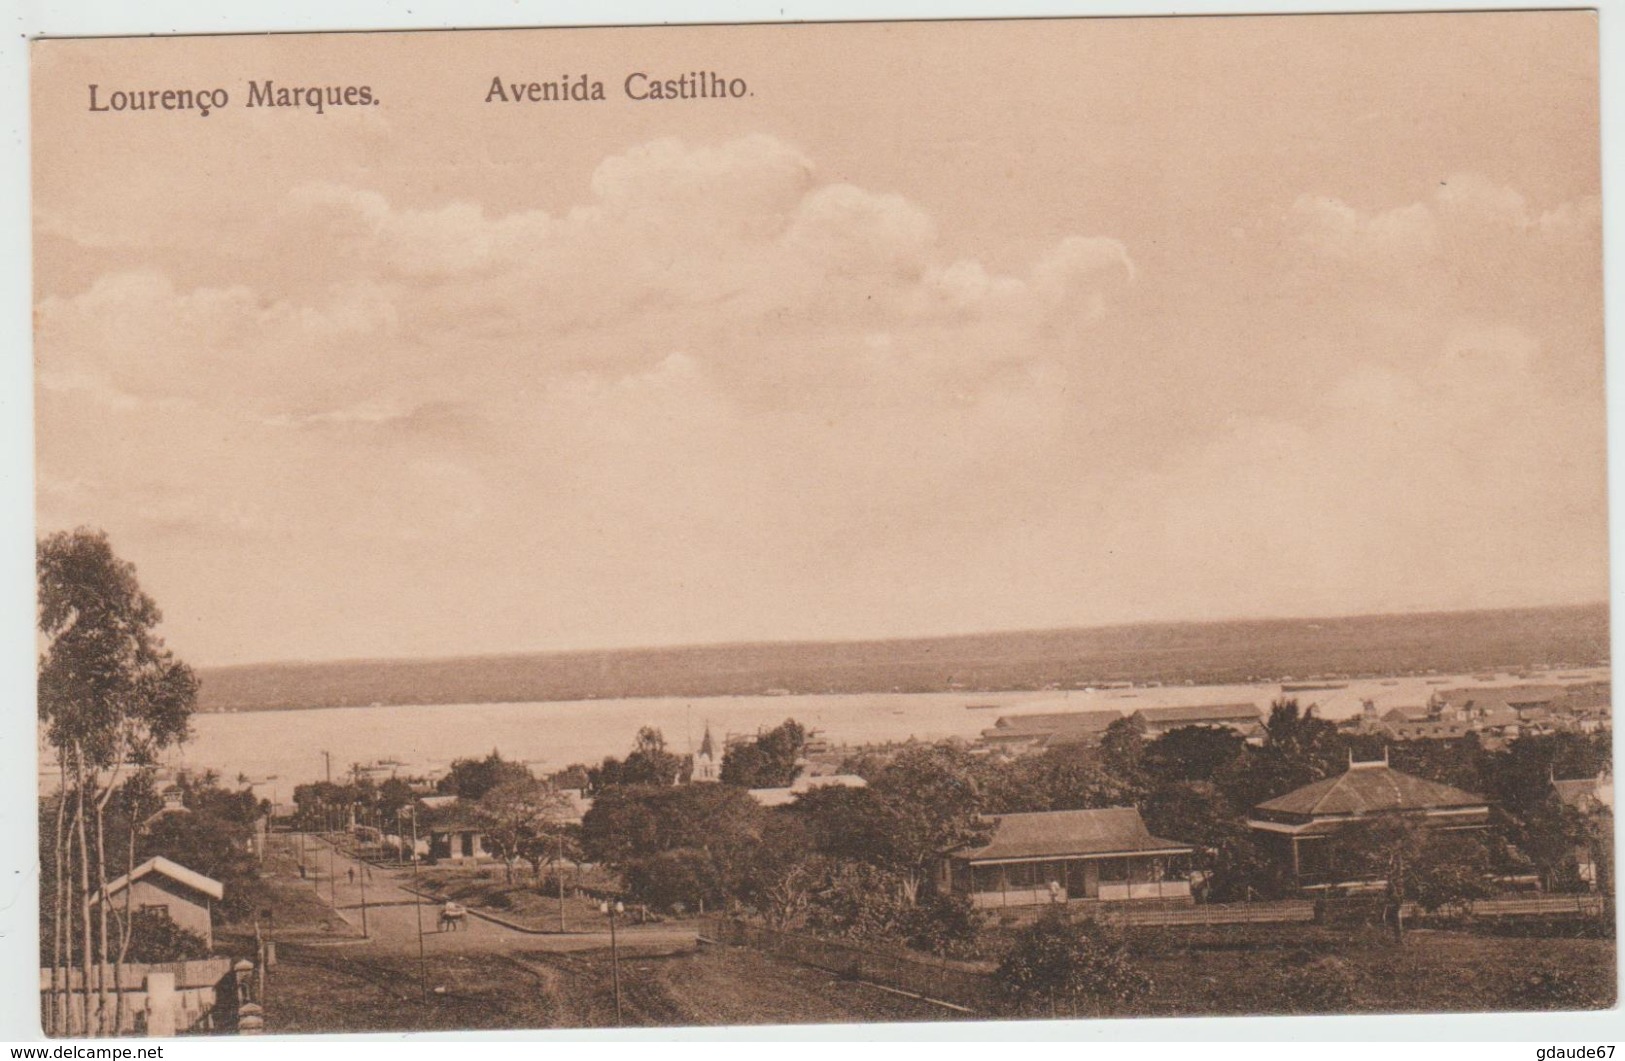 LOURENCO MARQUES - AVENIDA CASTILHO (MOZAMBIQUE) - Mozambique